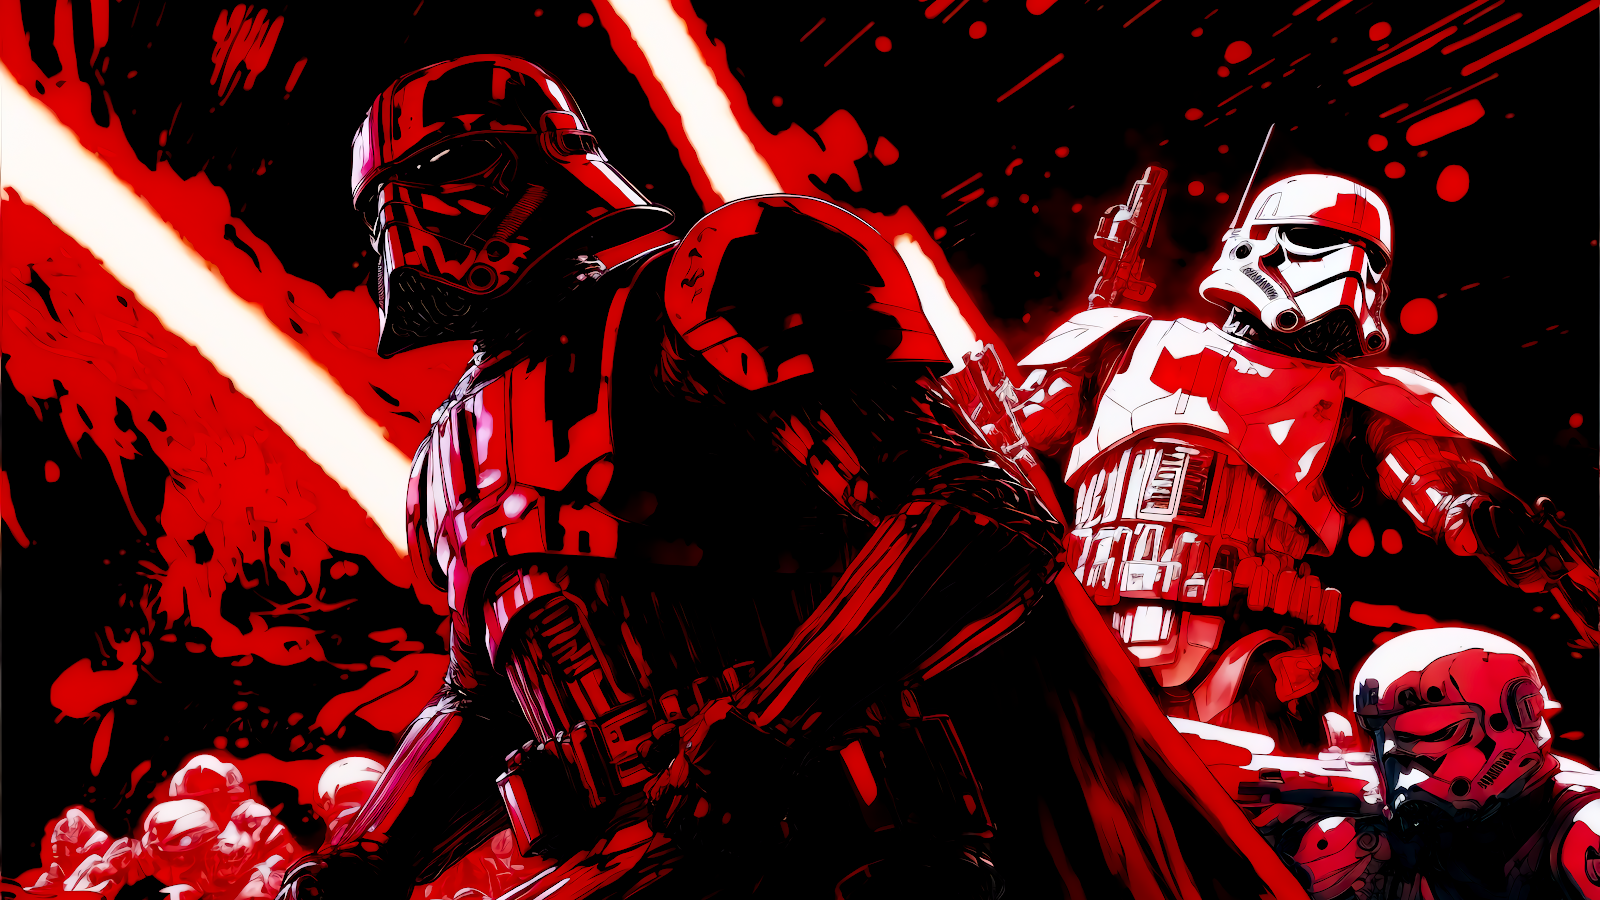 Nếu bạn thích điều gì đen tối và huyền bí, hãy xem hình nền Star Wars Dark Side. Sự kết hợp giữa bóng tối với những chi tiết hoàn hảo của đế chế sẽ khiến bạn phải trầm trồ. Đây chắc chắn là một lựa chọn tuyệt vời cho các fan hâm mộ Star Wars!